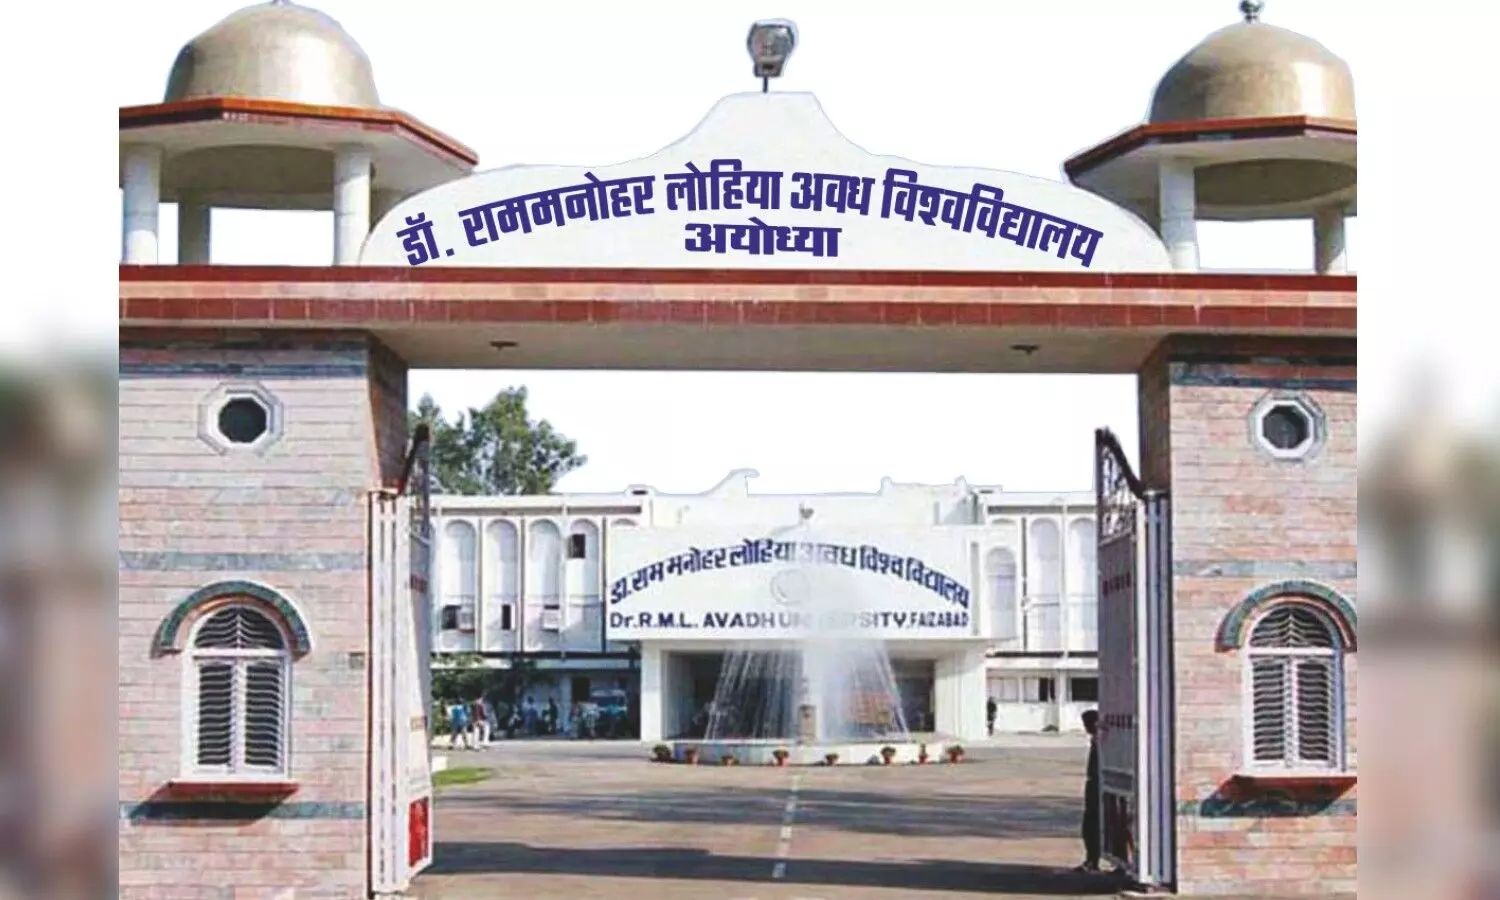 Ayodhya News: लोहिया विवि के छात्र अगली कक्षाओं में होंगे प्रमोट, स्नातक व परास्नातक छात्रों को मिलेगा लाभ